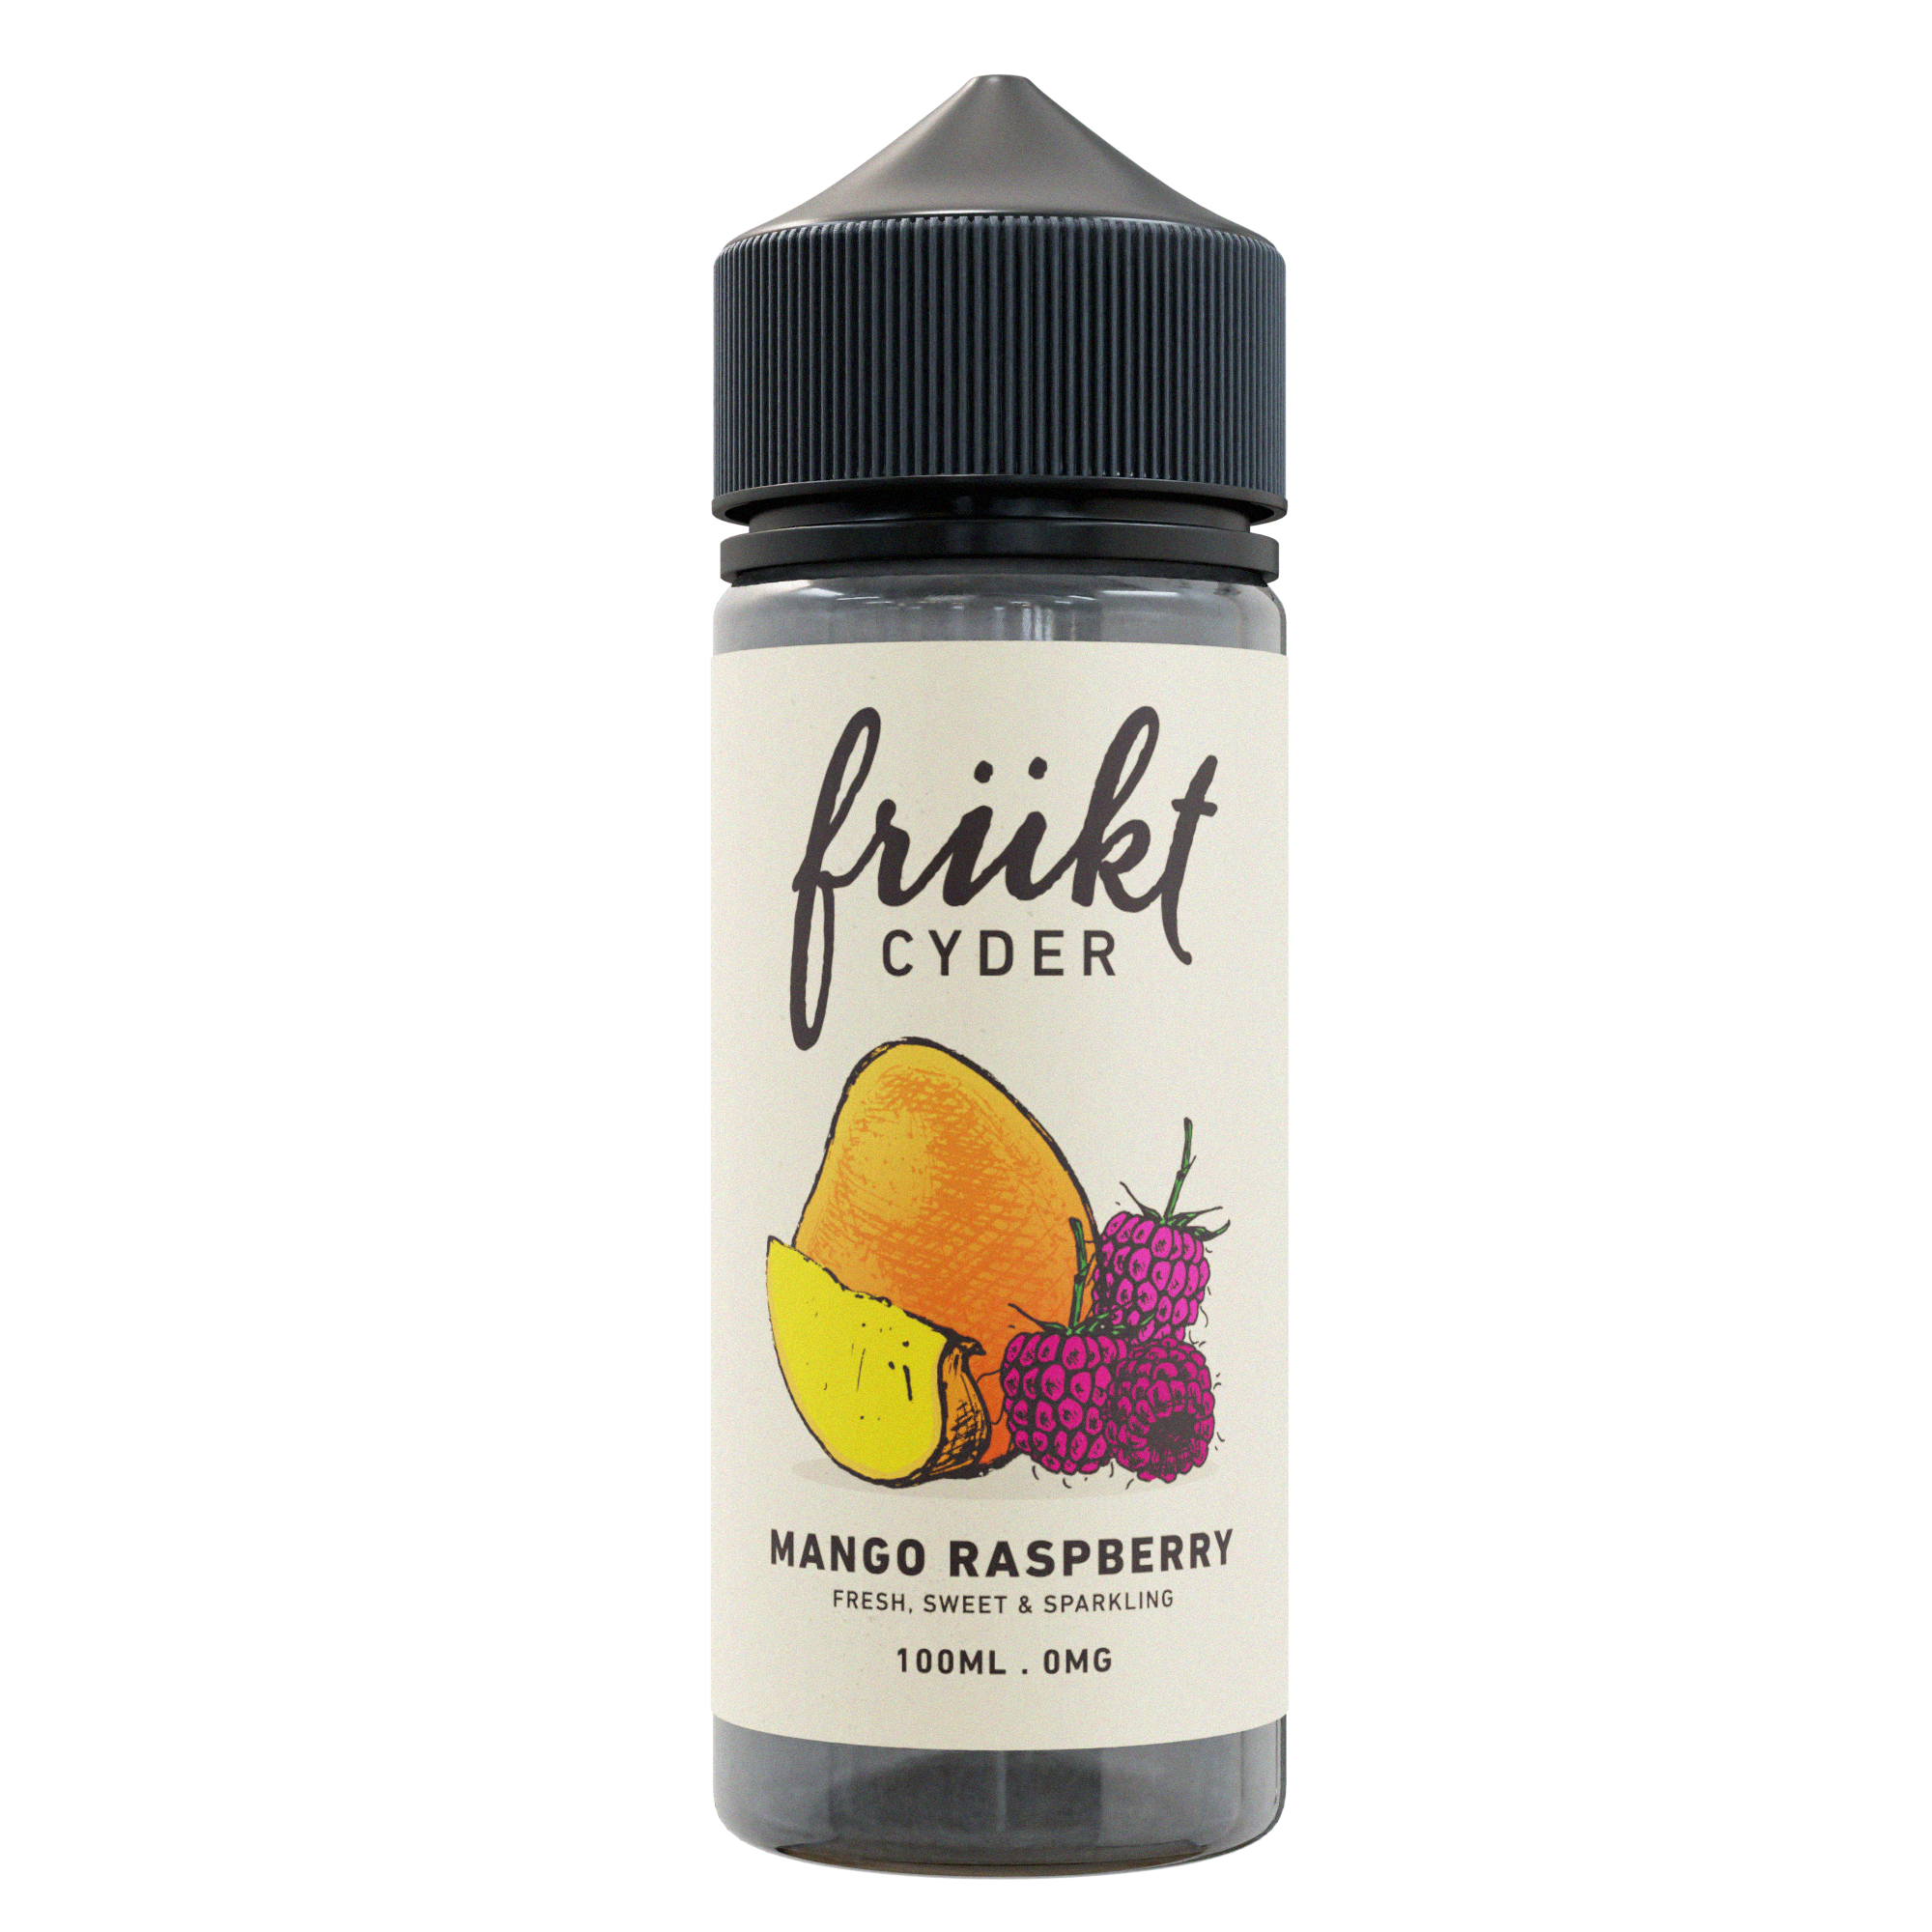 Mango Raspberry eLiquid by Frukt Cyder 100ml (6754623455393)